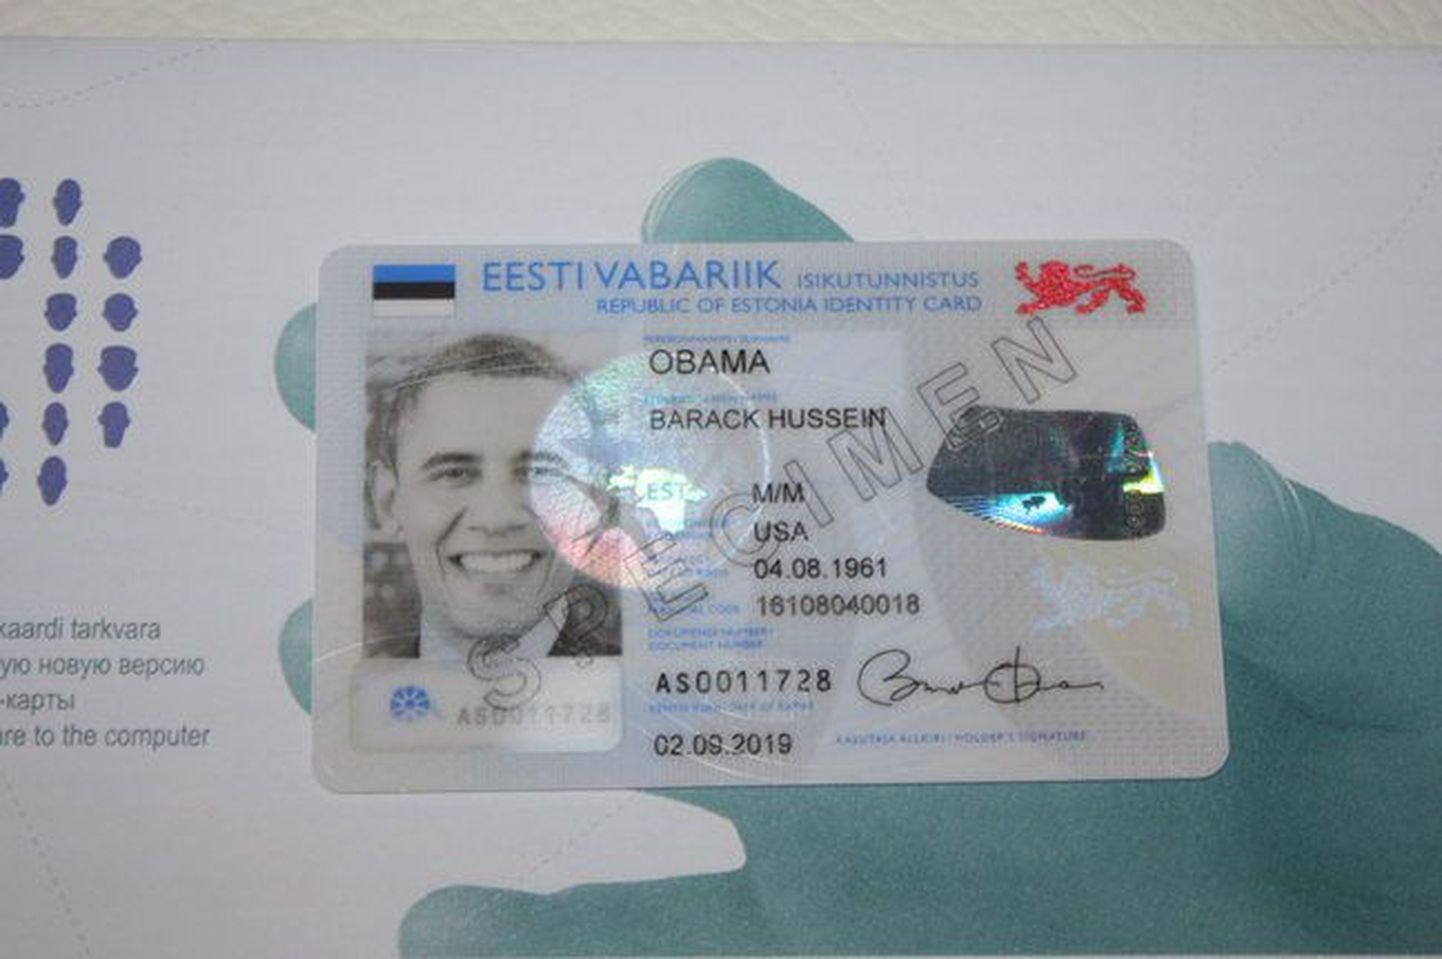 Барак Обама получил в подарок образец эстонской ИД-карты, однако со вступлением нового закона в силу президент США мог бы ходатайствовать и о настоящей ИД-карте.